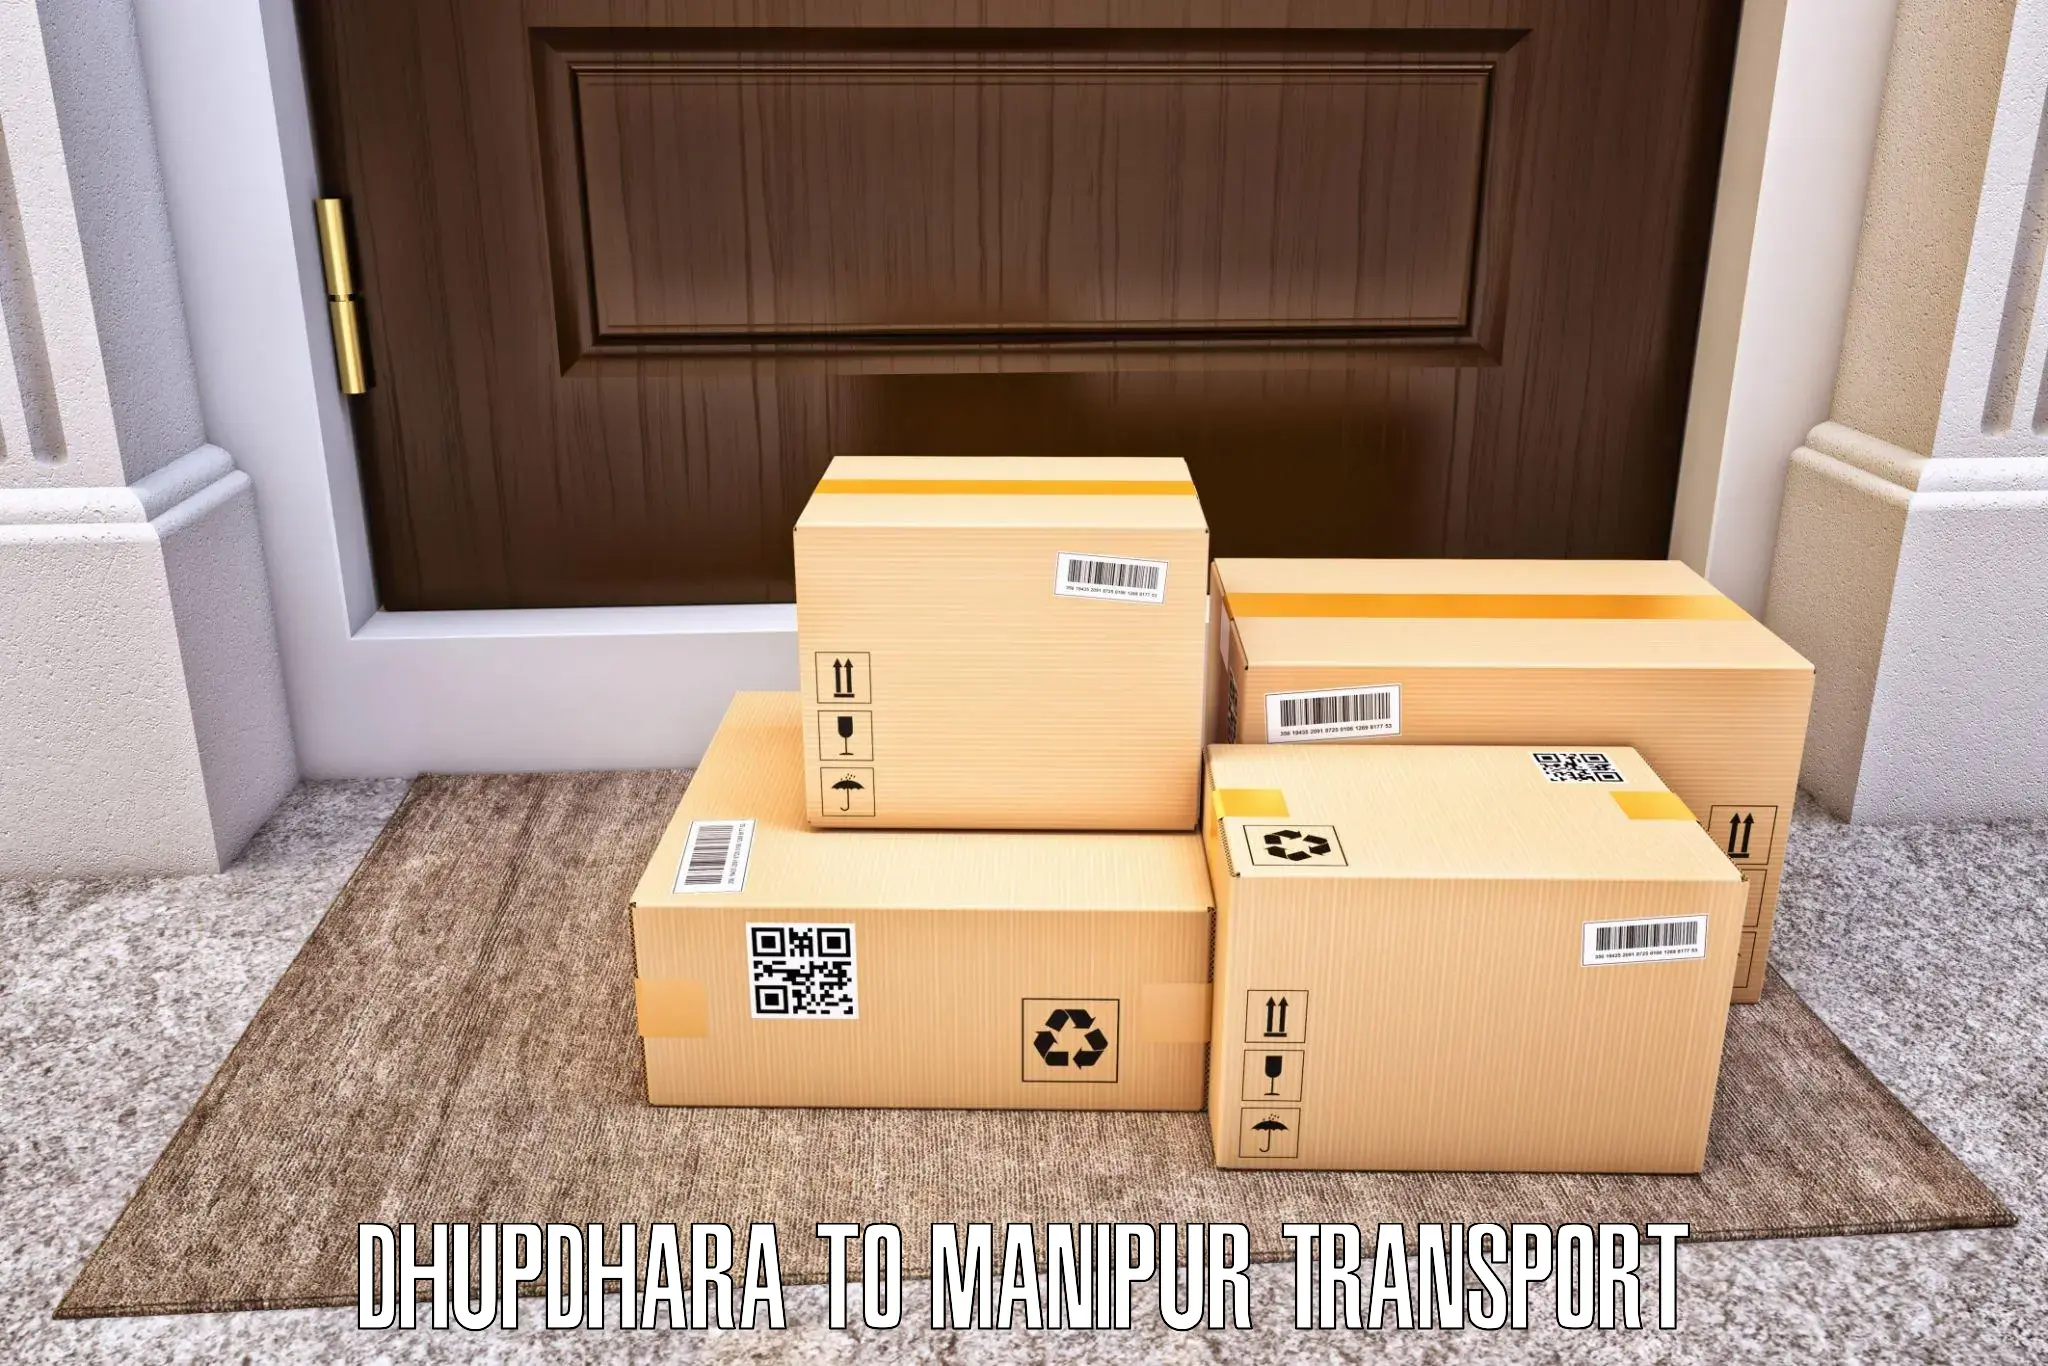 Furniture transport service Dhupdhara to Kakching